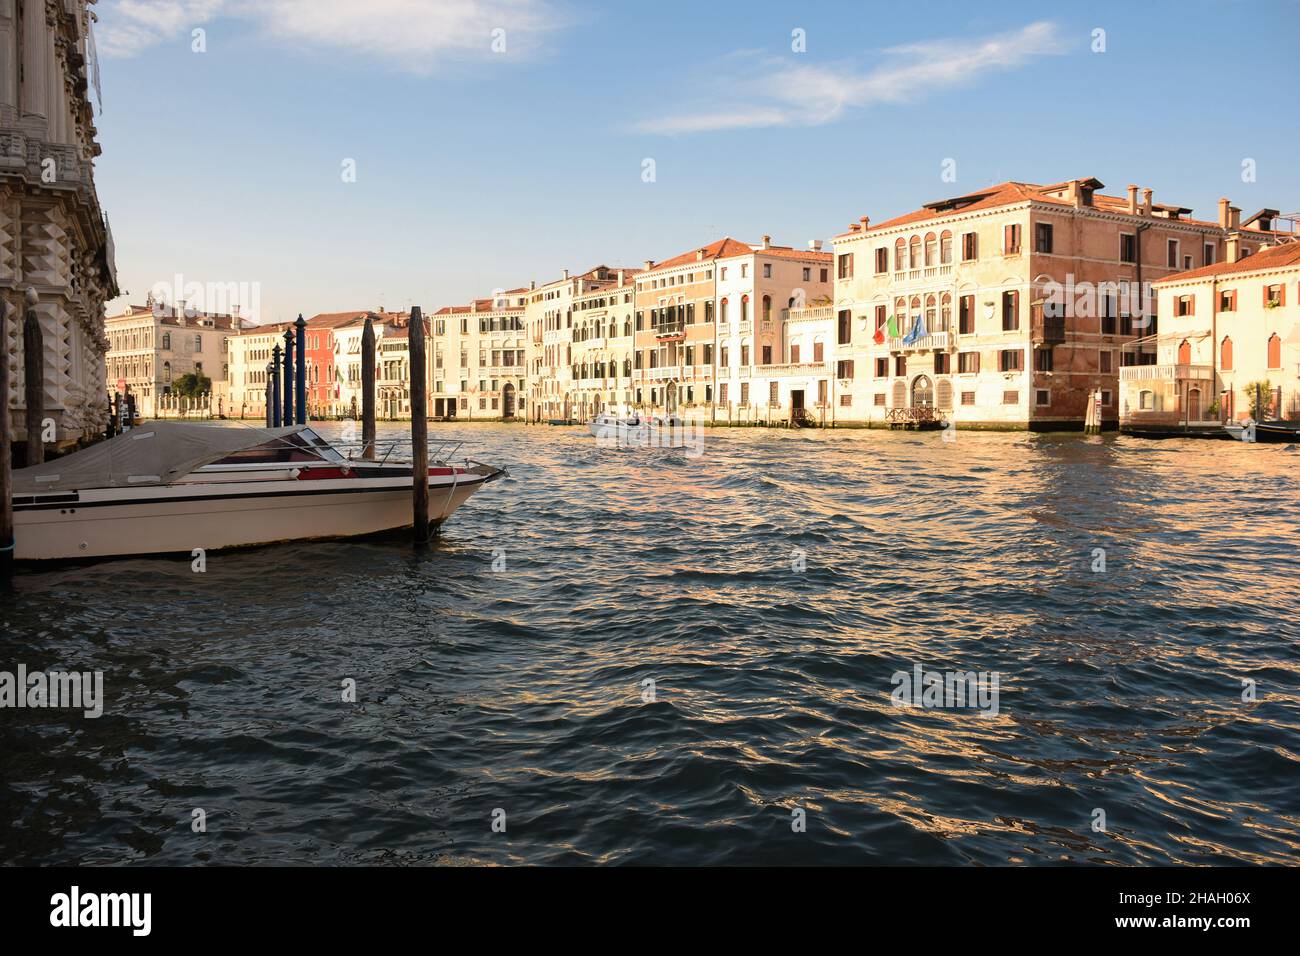 Un large canal dans la Venise italienne entre des bâtiments anciens, éclairés par le soleil, avec des bateaux dessus. Banque D'Images